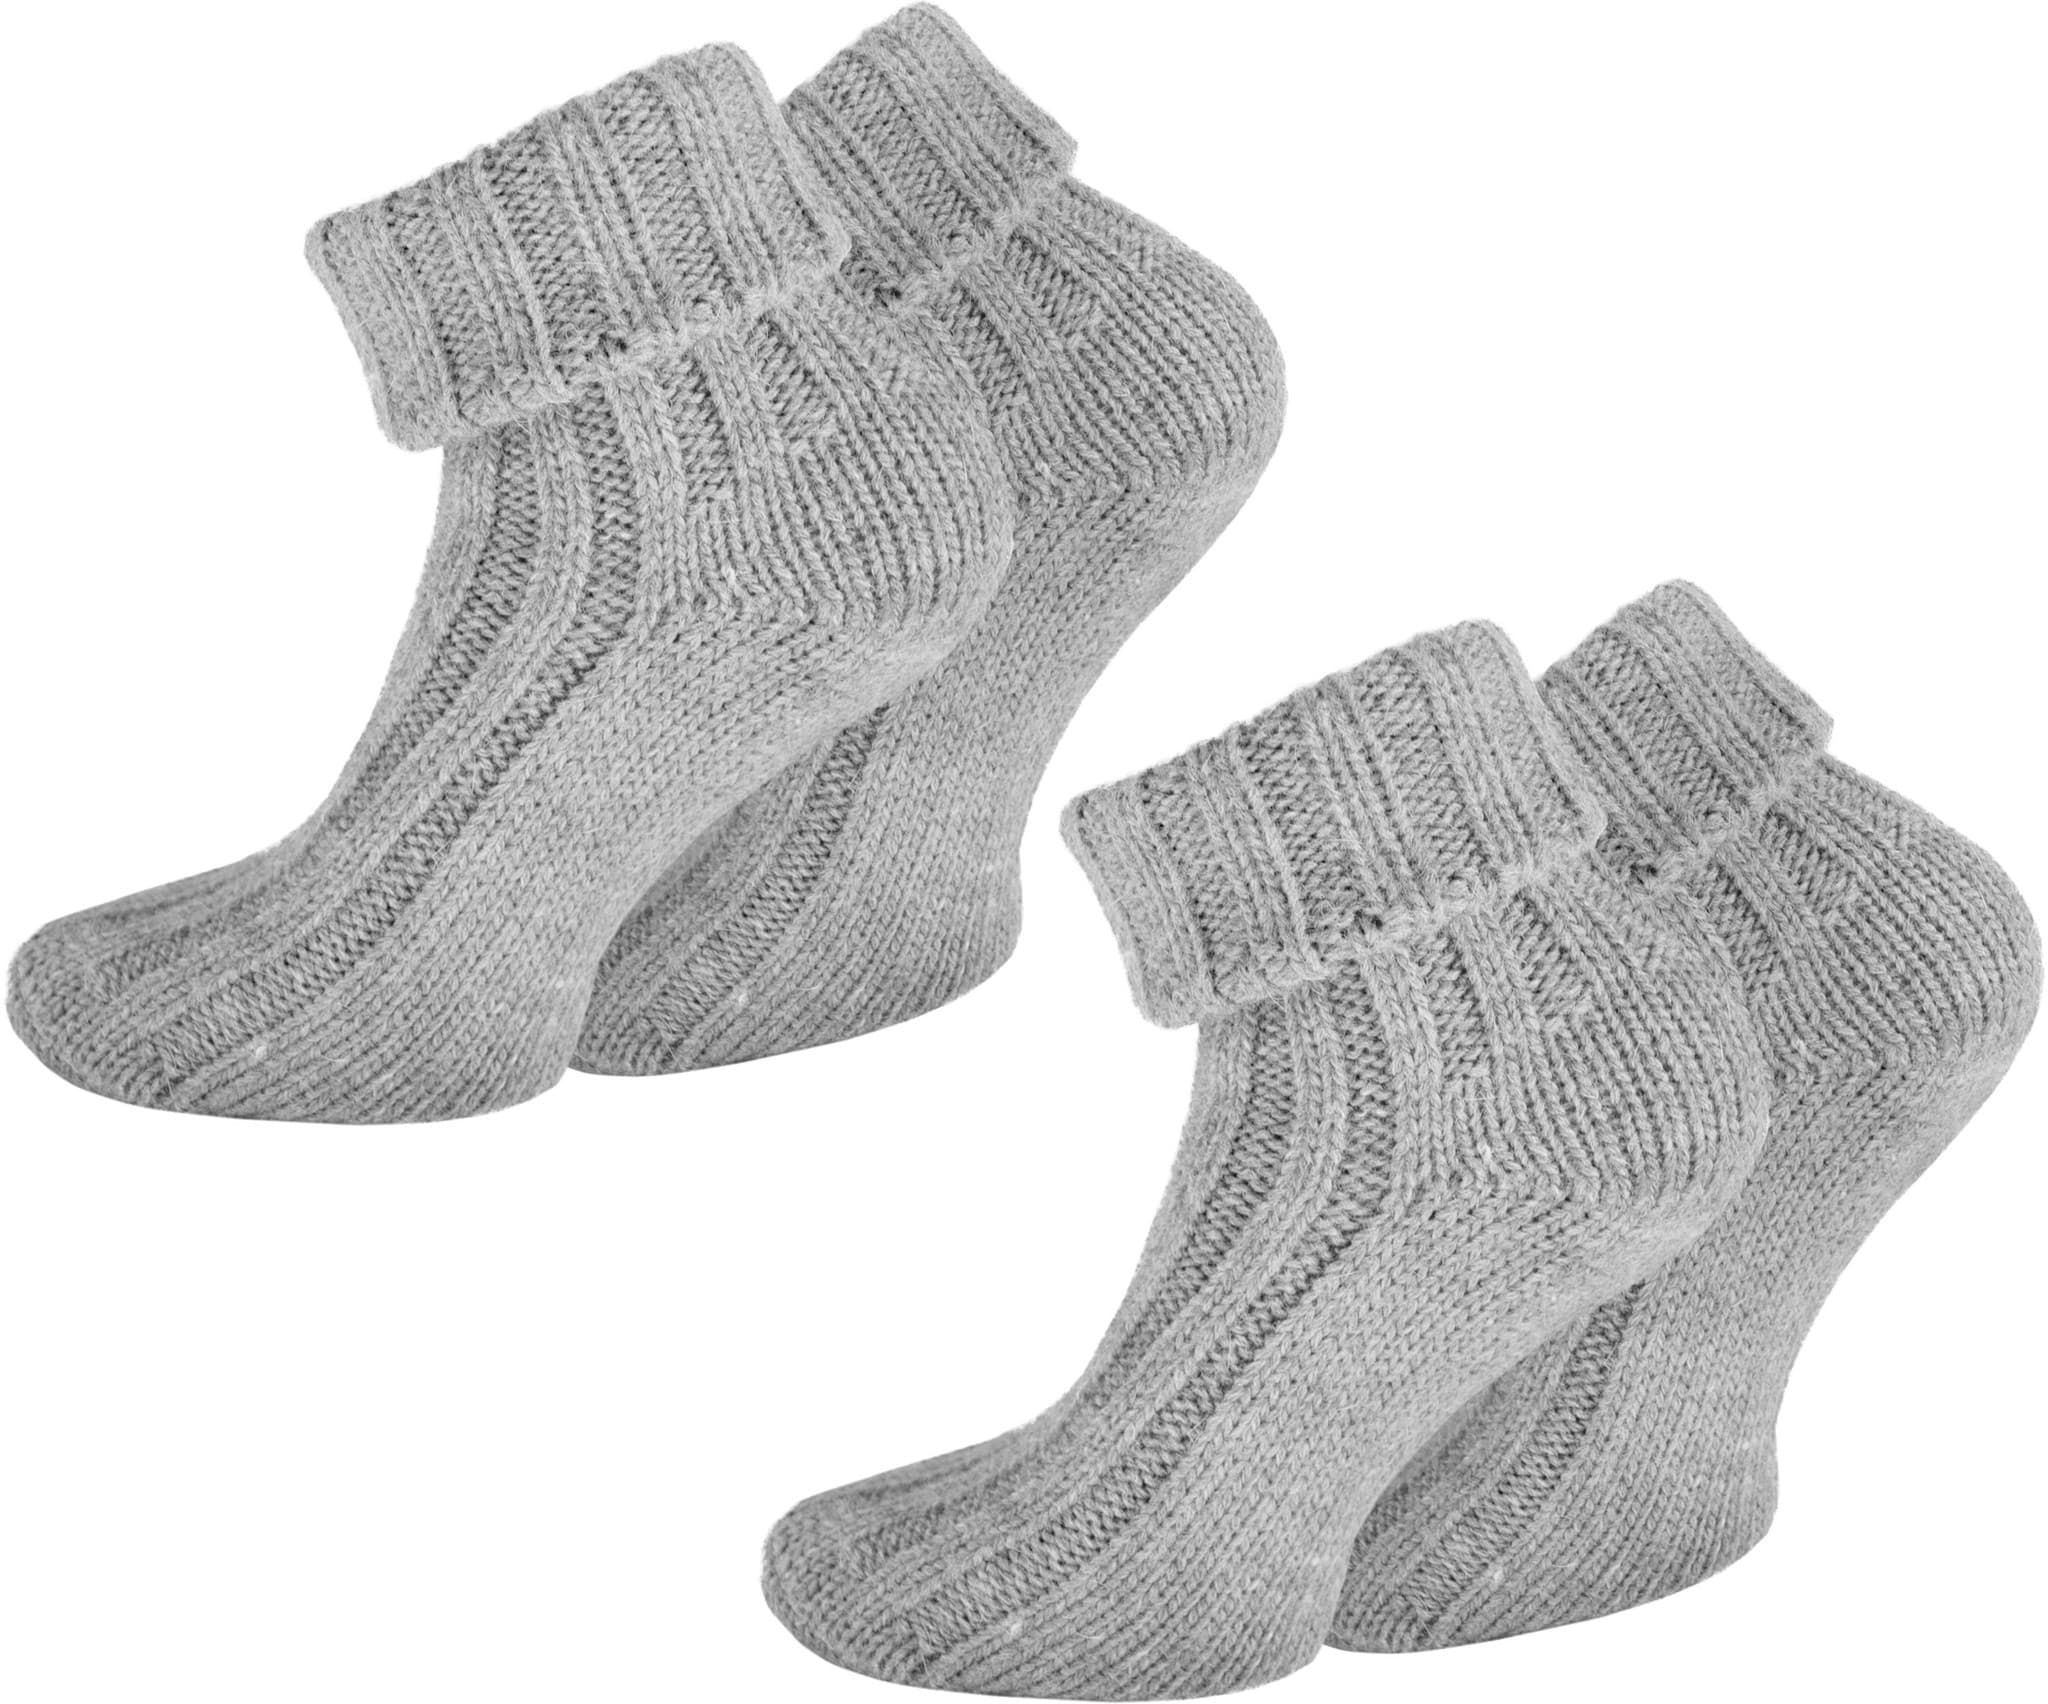 Bild von 2 Paar Alpaka-Socken mit Umschlag Hellgrau